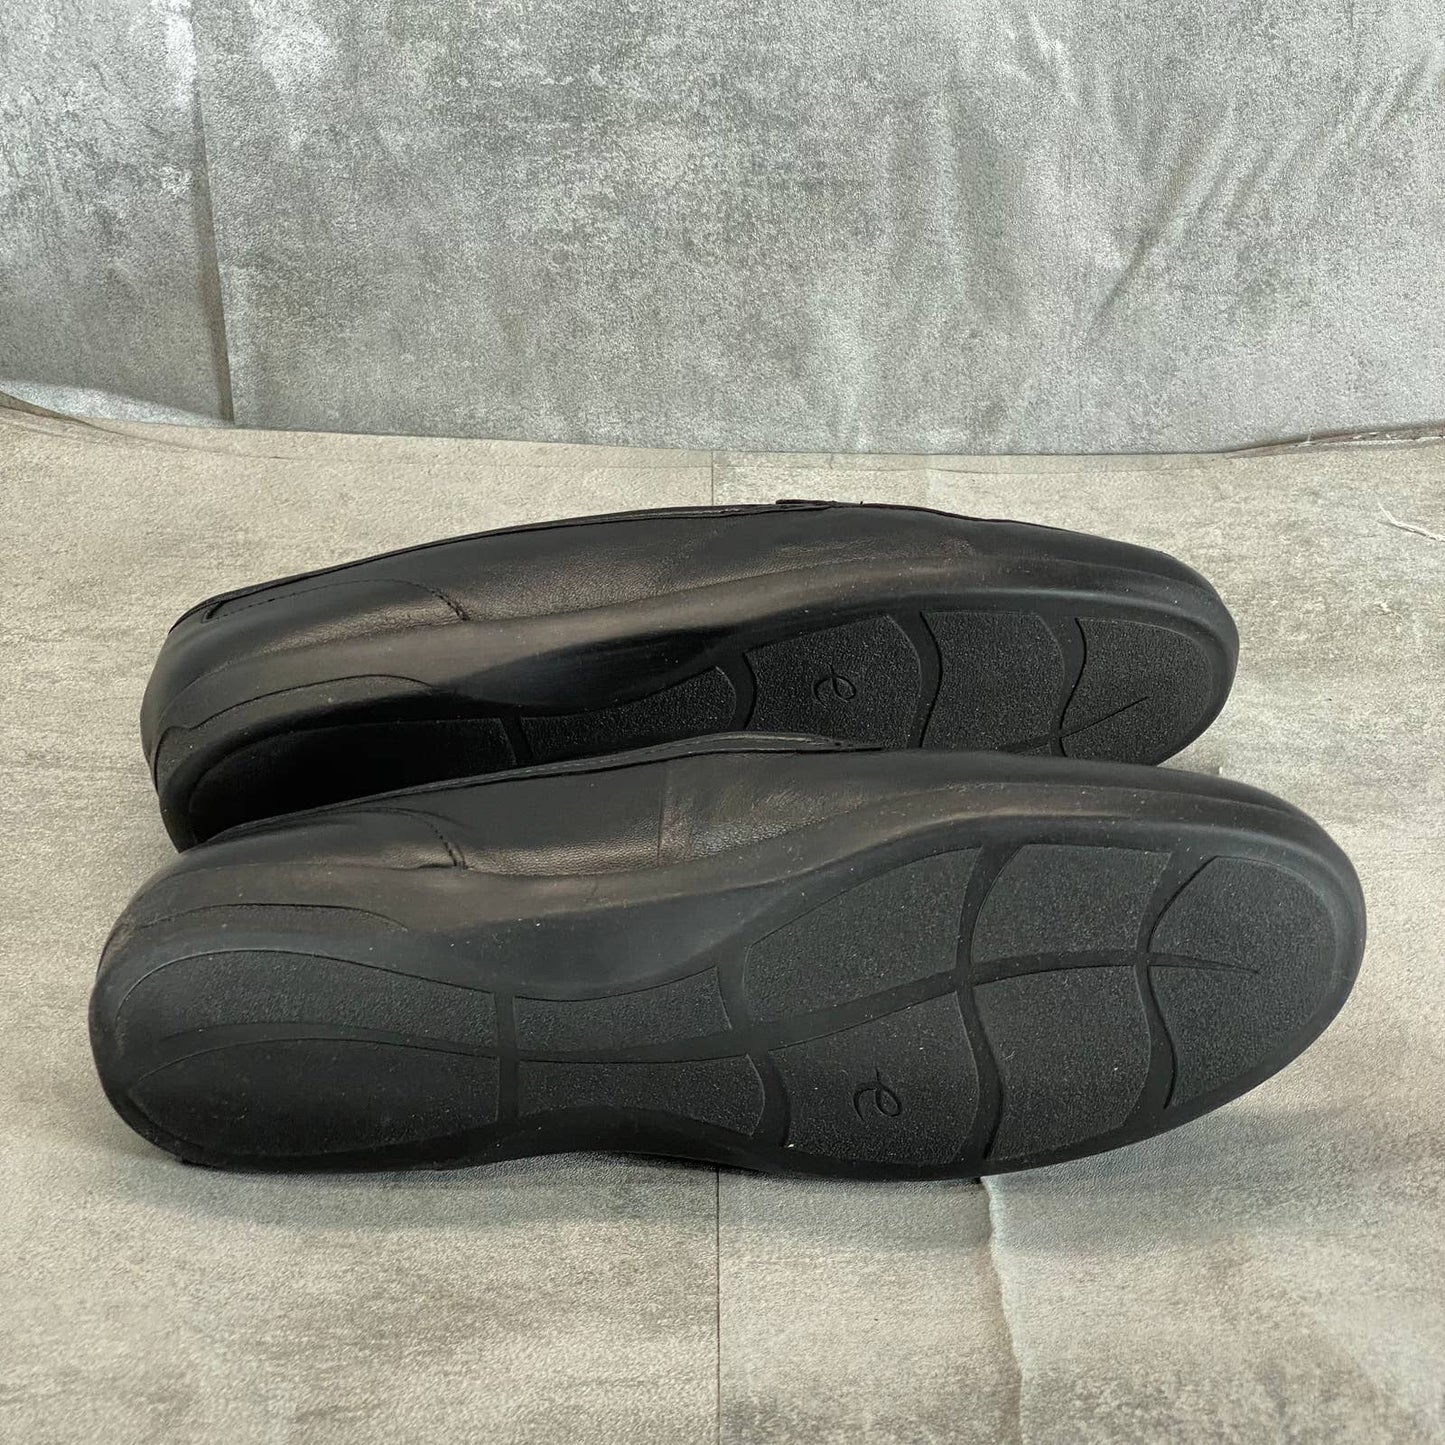 EASY SPIRIT Women's Black Leather Devitt Round-Toe Slip-On Loafer Flats SZ 8